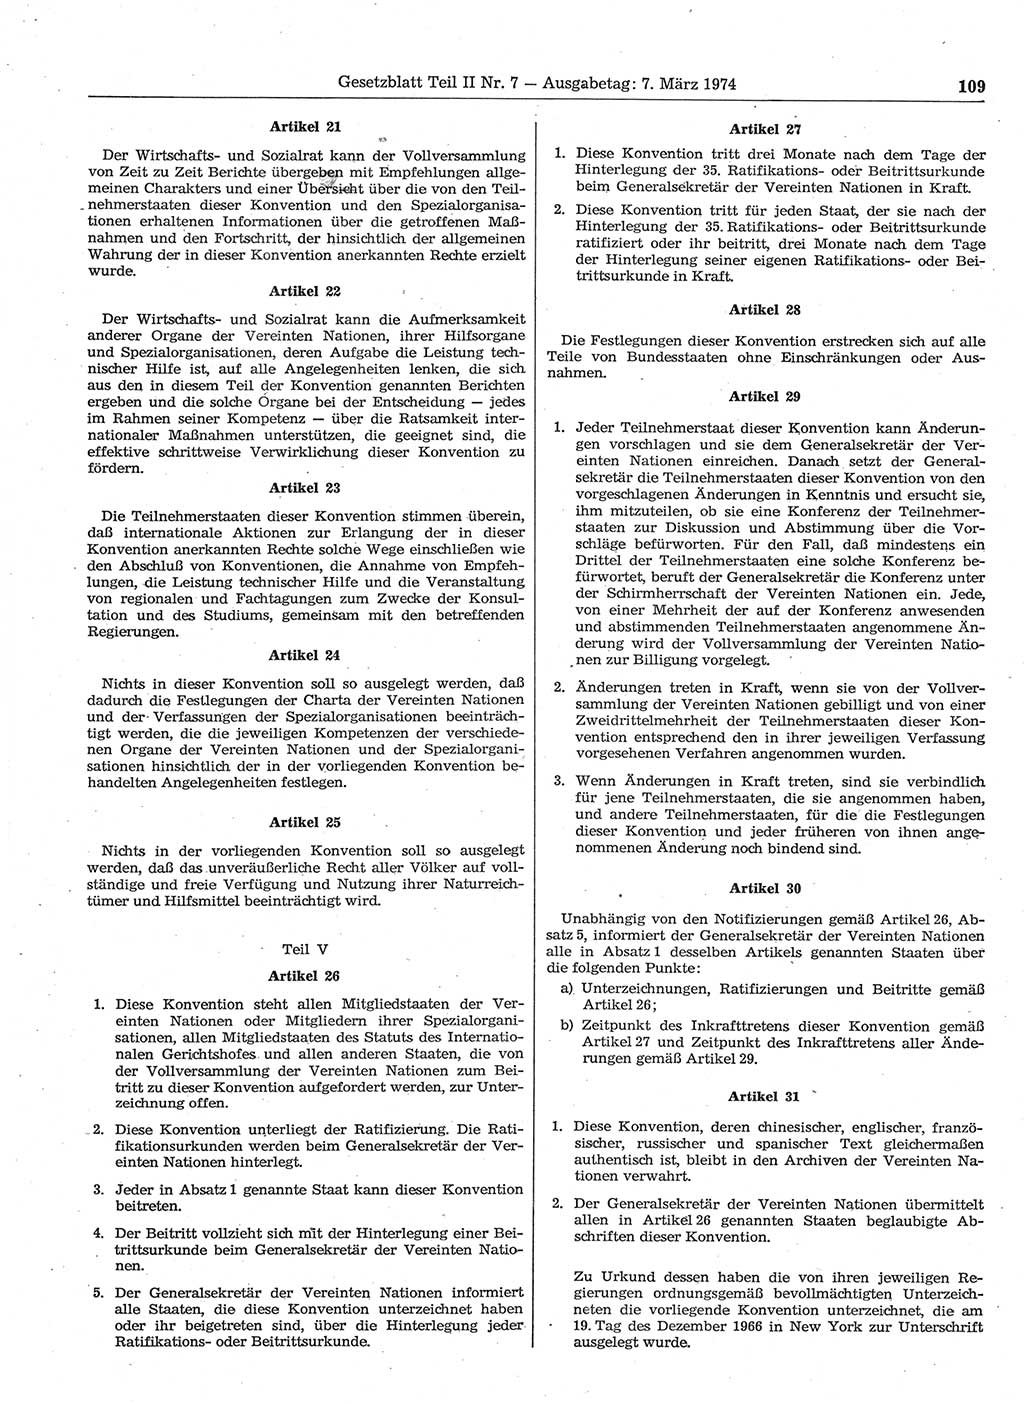 Gesetzblatt (GBl.) der Deutschen Demokratischen Republik (DDR) Teil ⅠⅠ 1974, Seite 109 (GBl. DDR ⅠⅠ 1974, S. 109)